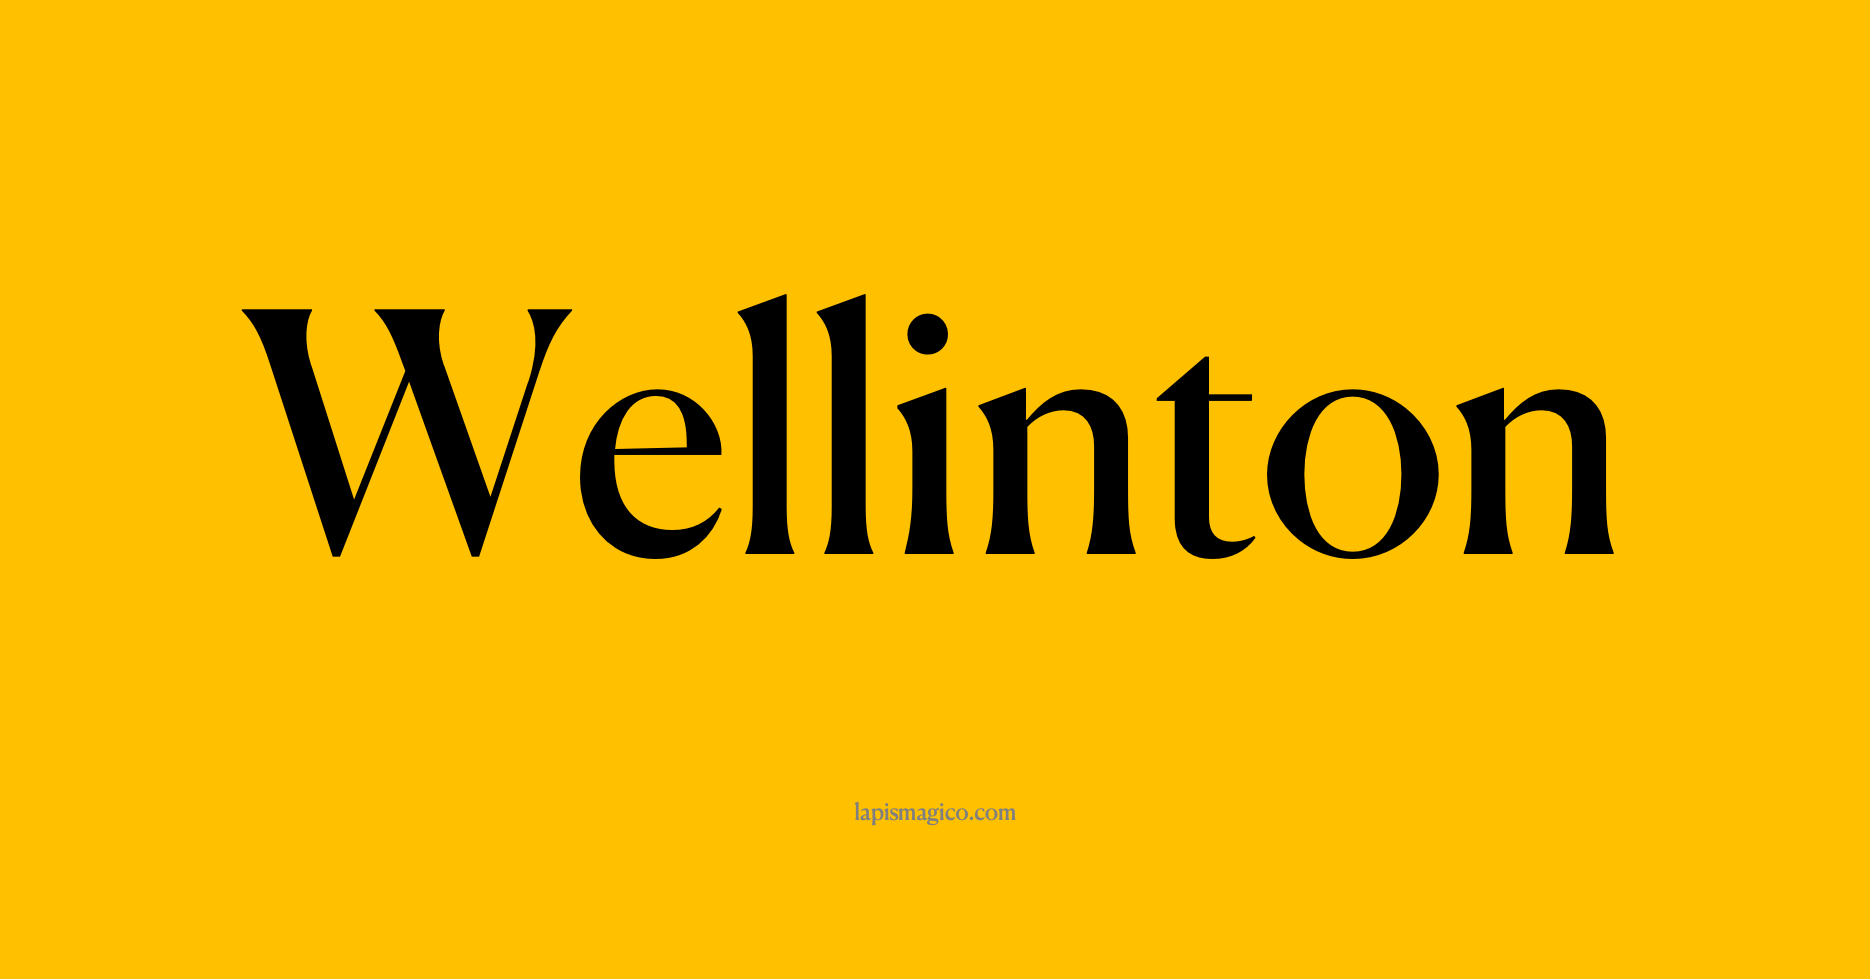 Nome Wellinton, ficha divertida com pontilhado para crianças